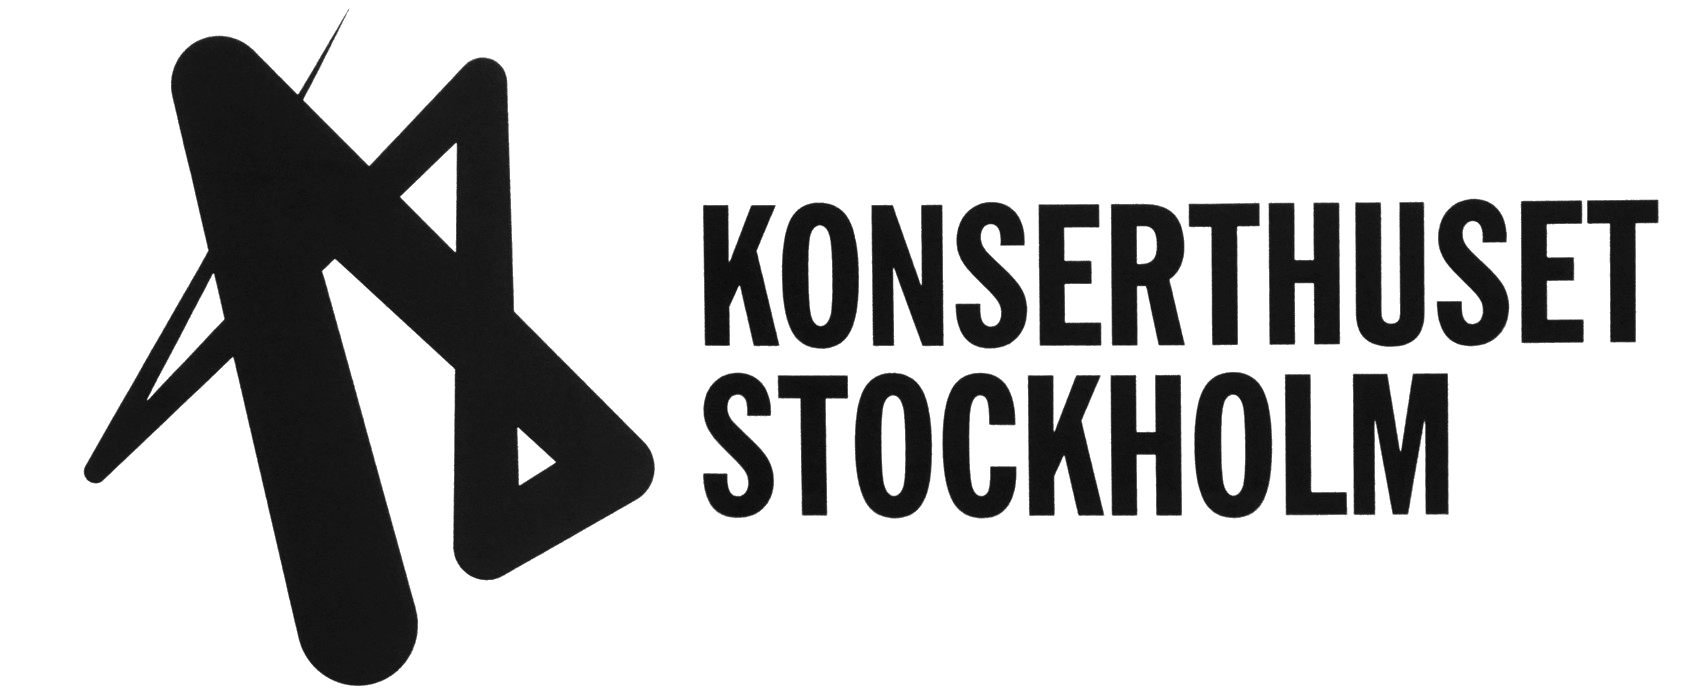 Konserthuset Stockholm logo